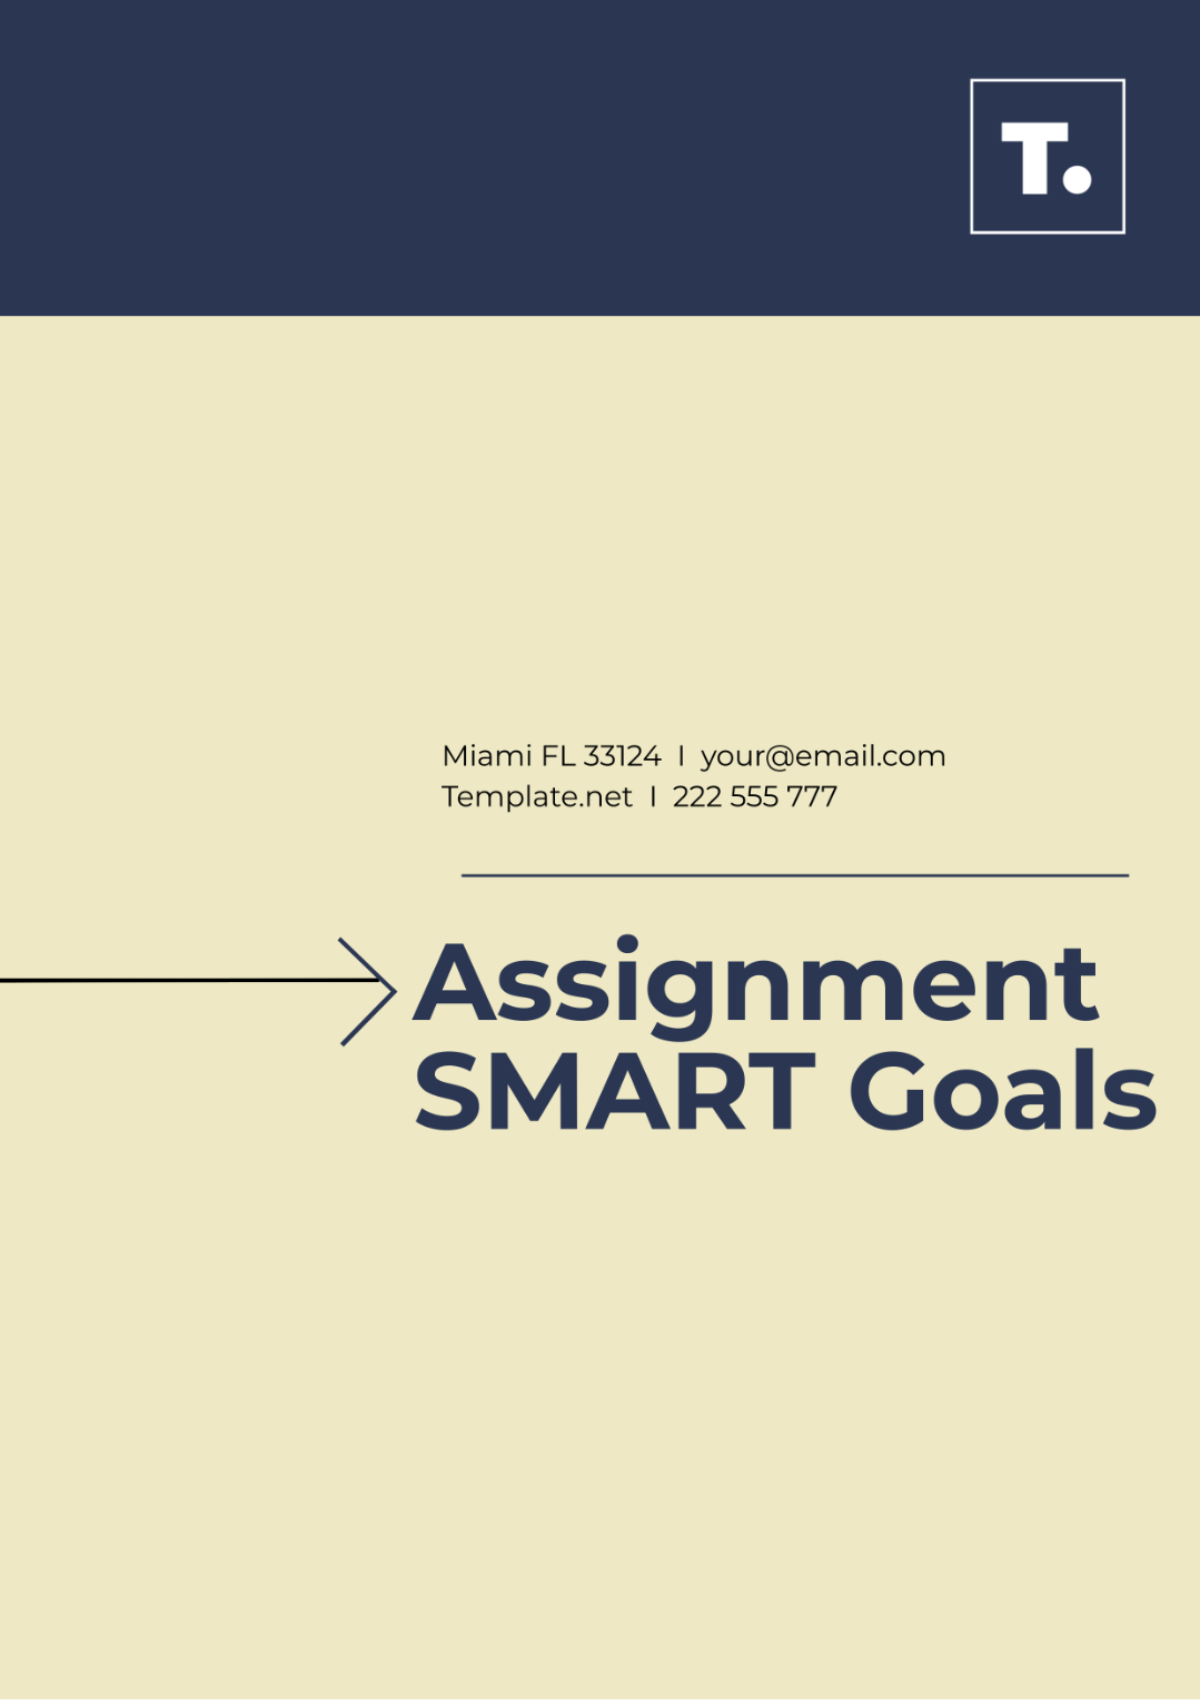 Assignment SMART Goals Template